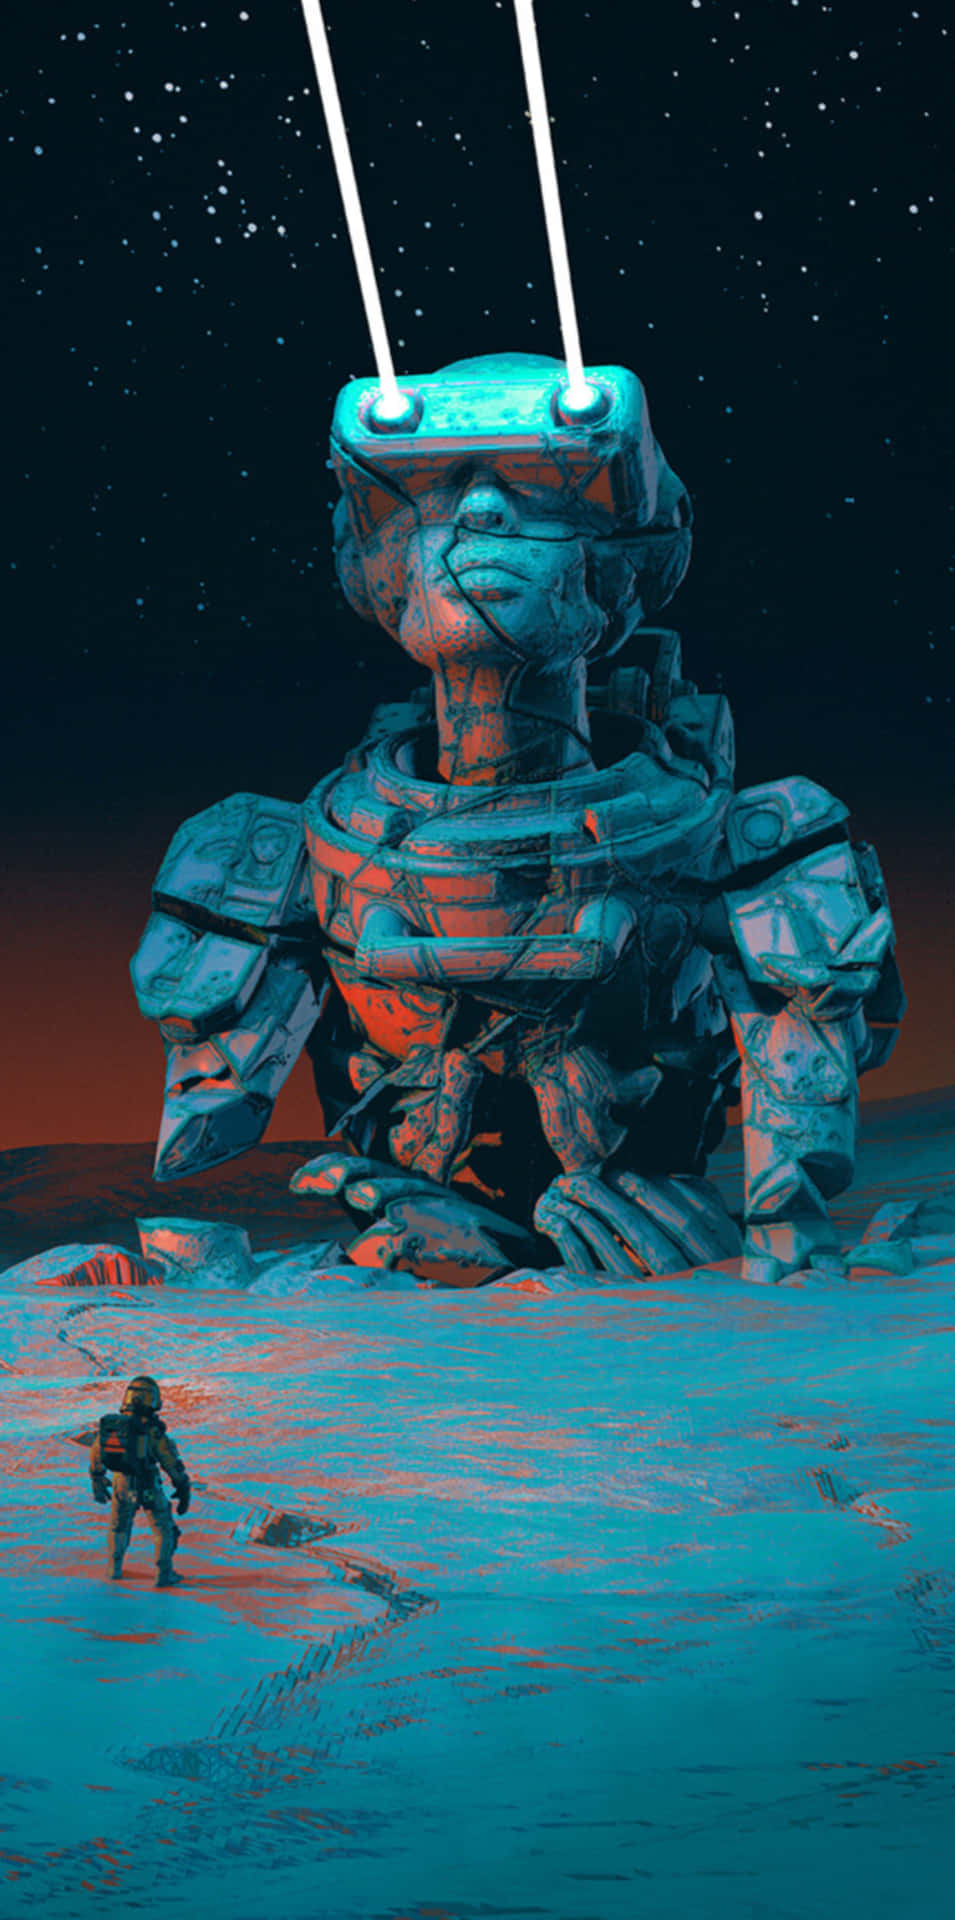 En mand står foran en robot i ørkenen Wallpaper